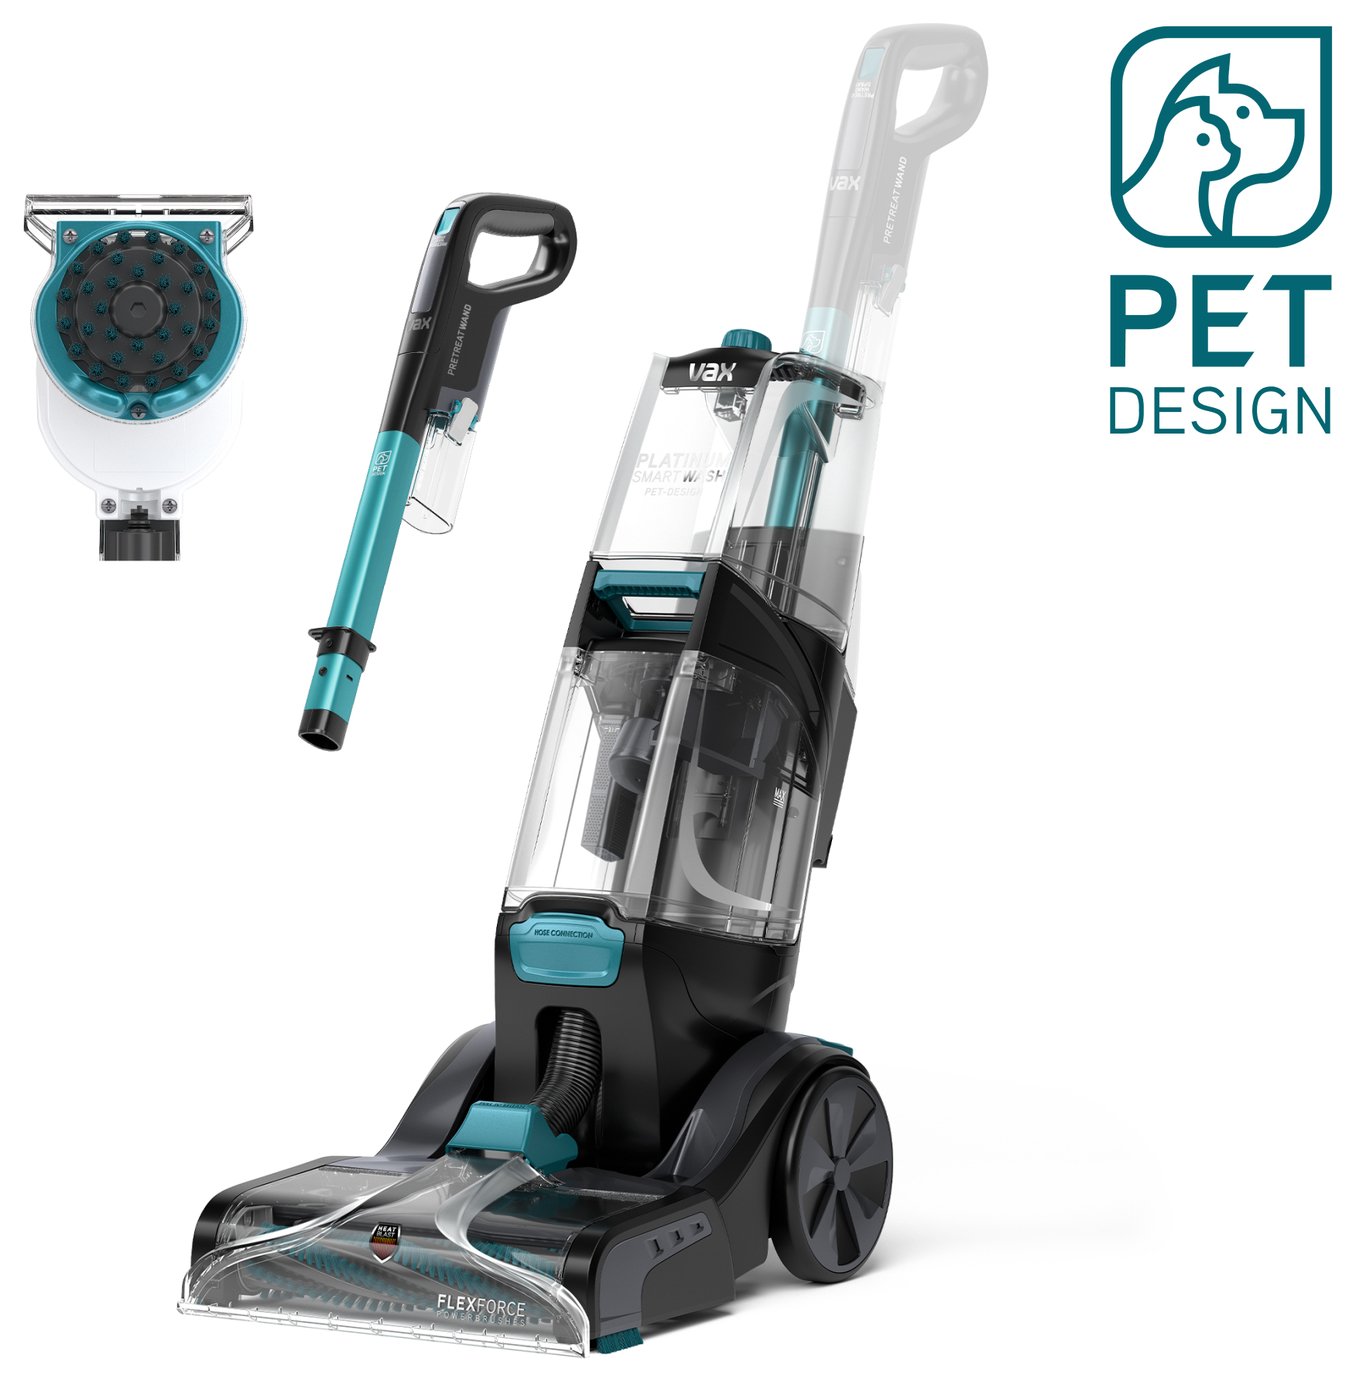 Vax Smartwash Pet-Design Carpet Cleaner